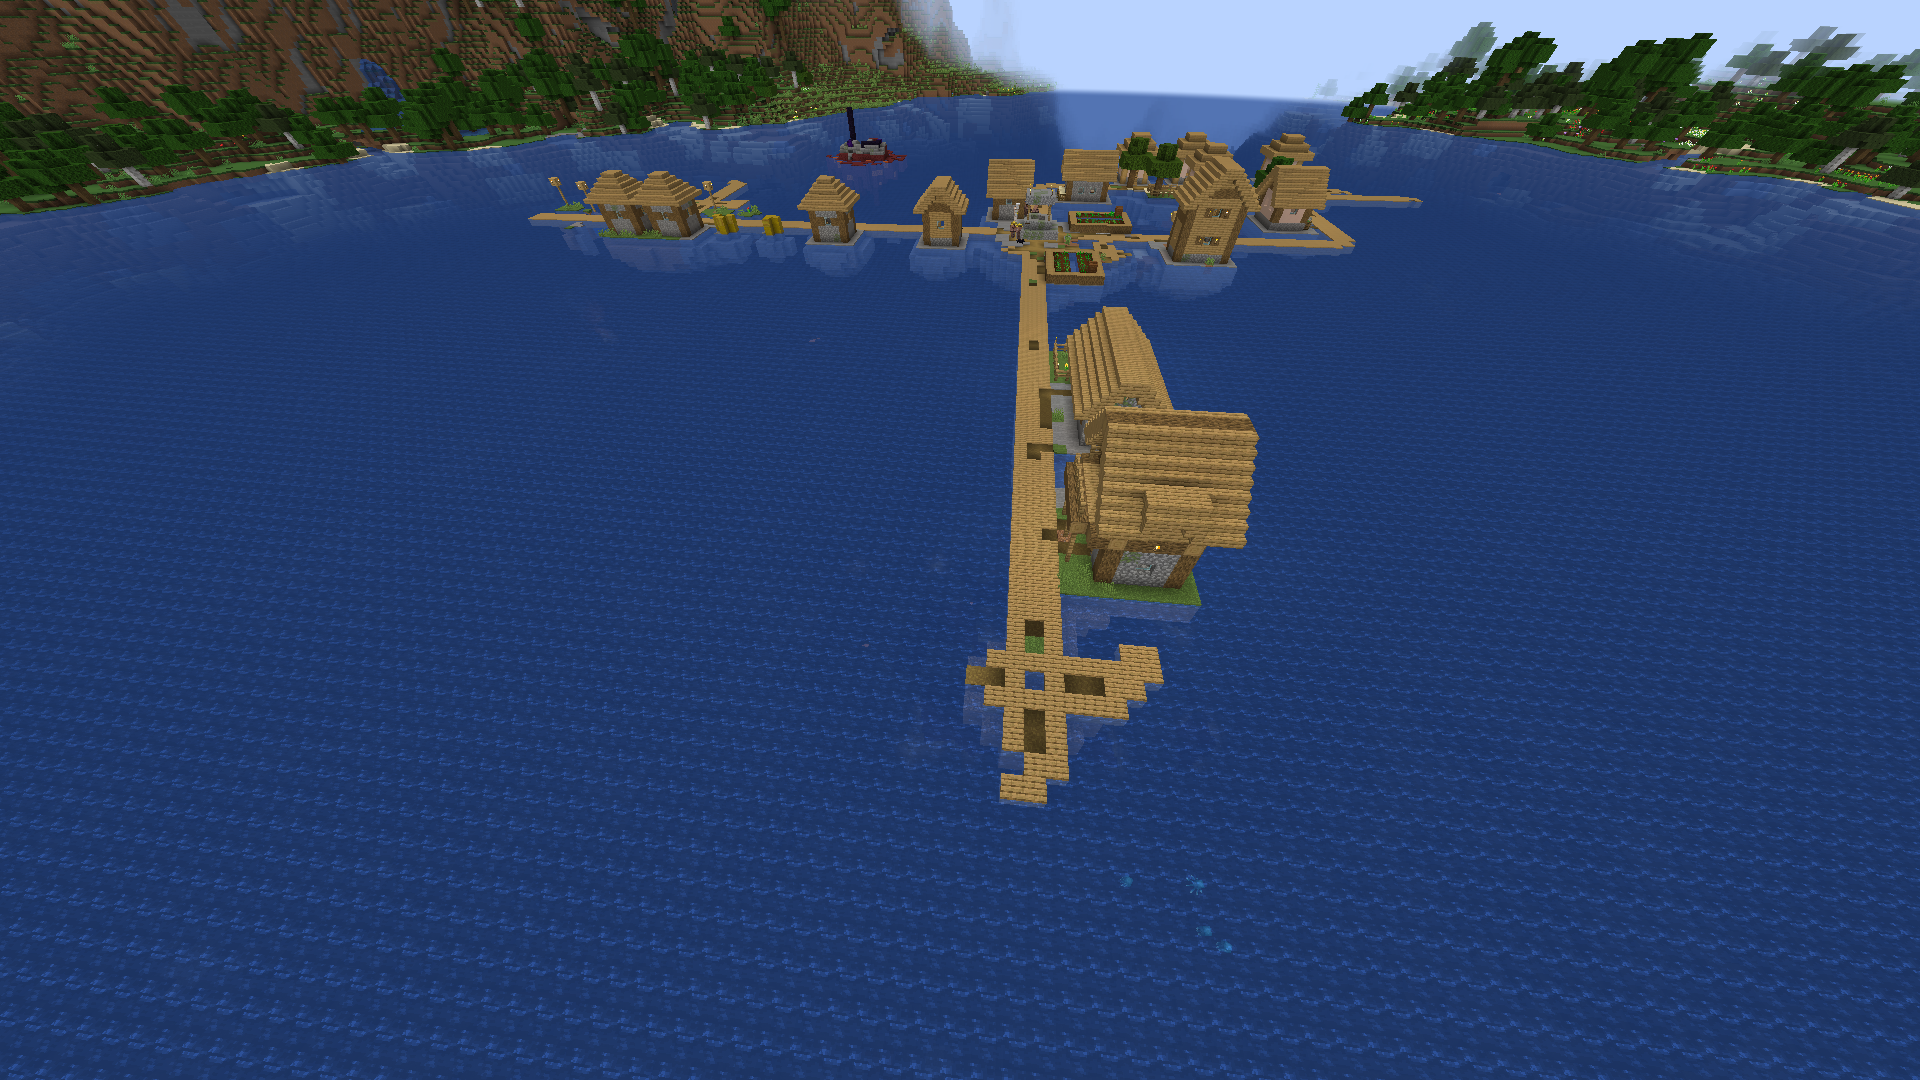 כפר Minecraft צף על אגם מסיבי ועמוק מאוד